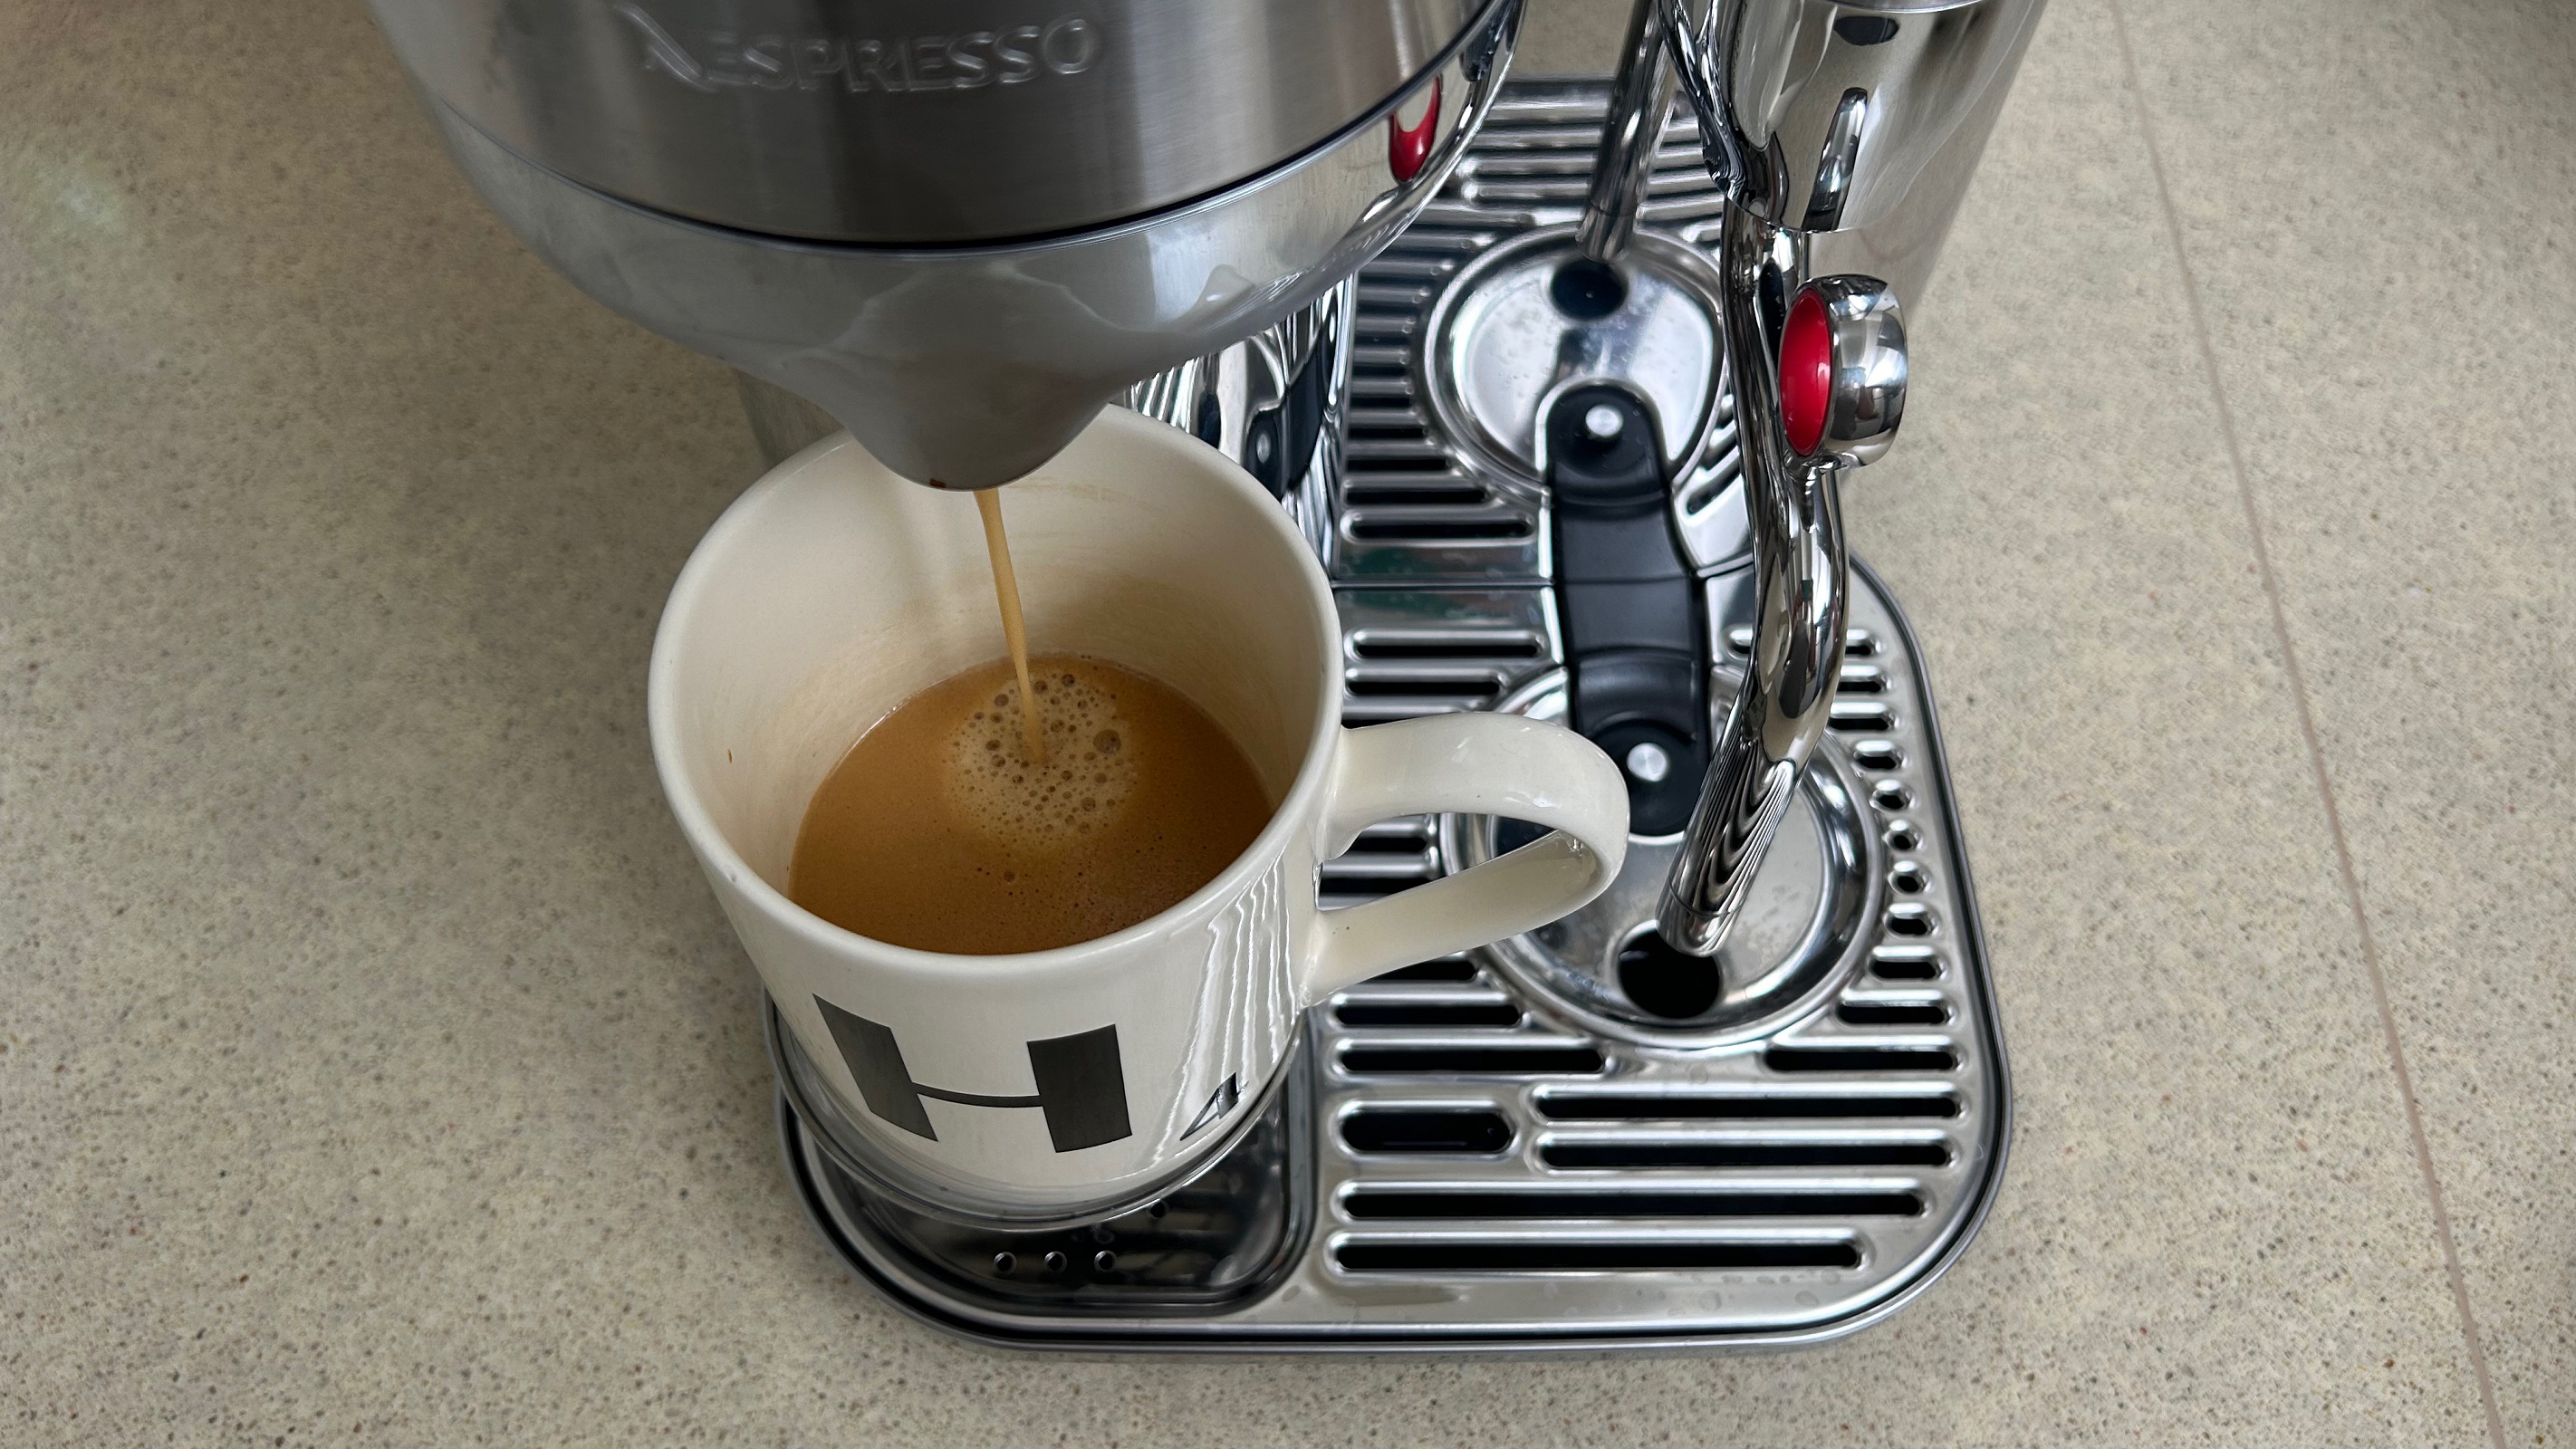 Nespresso Vertuo Creatista pouring coffee